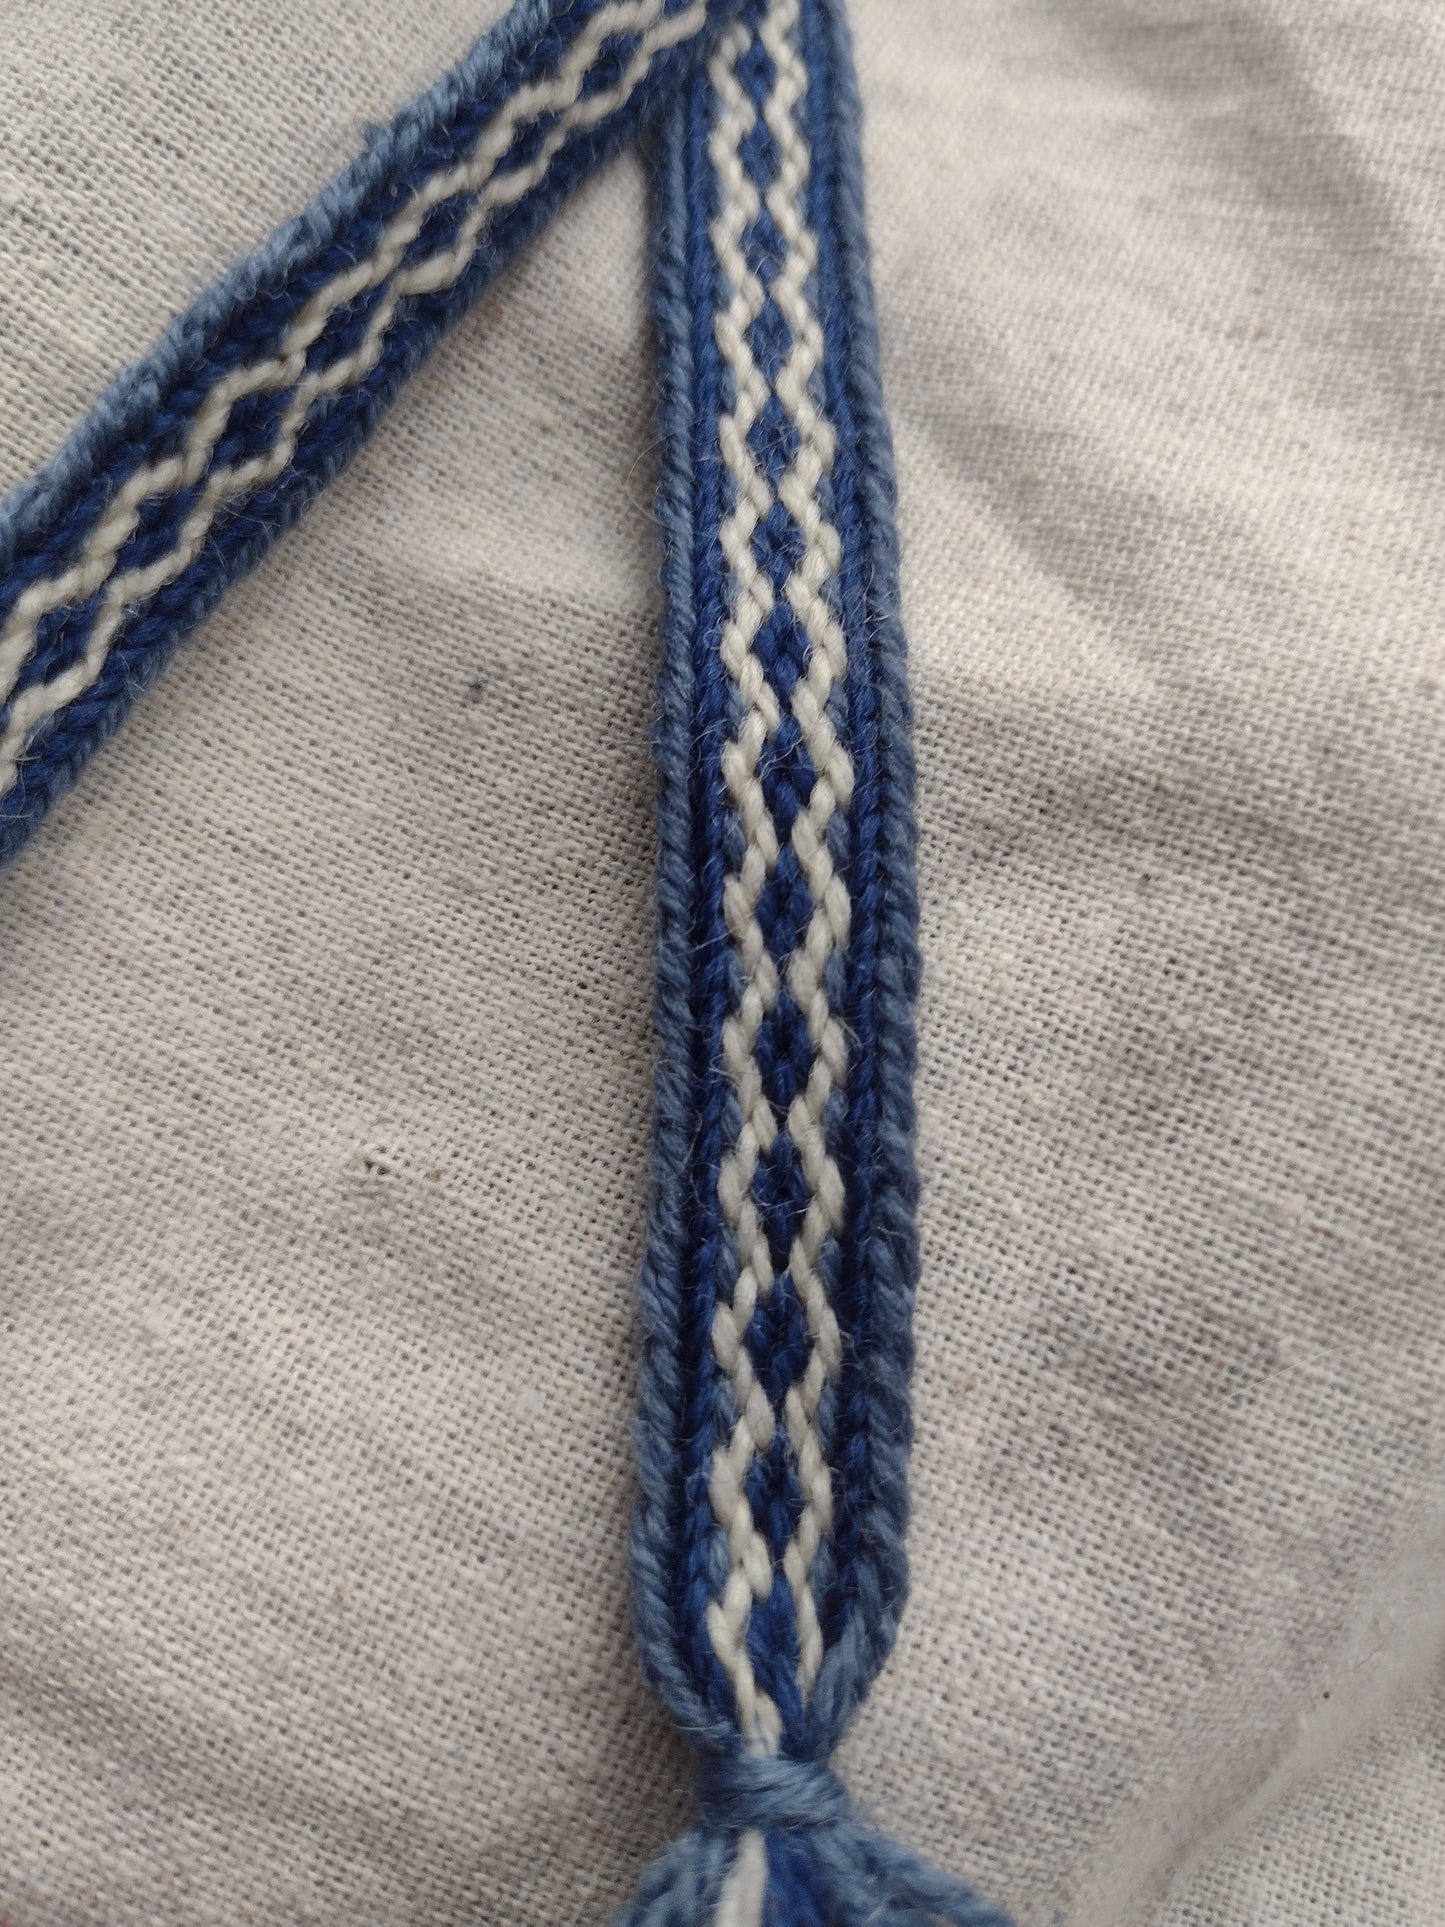 Narrow double sided Latvian style ribbon